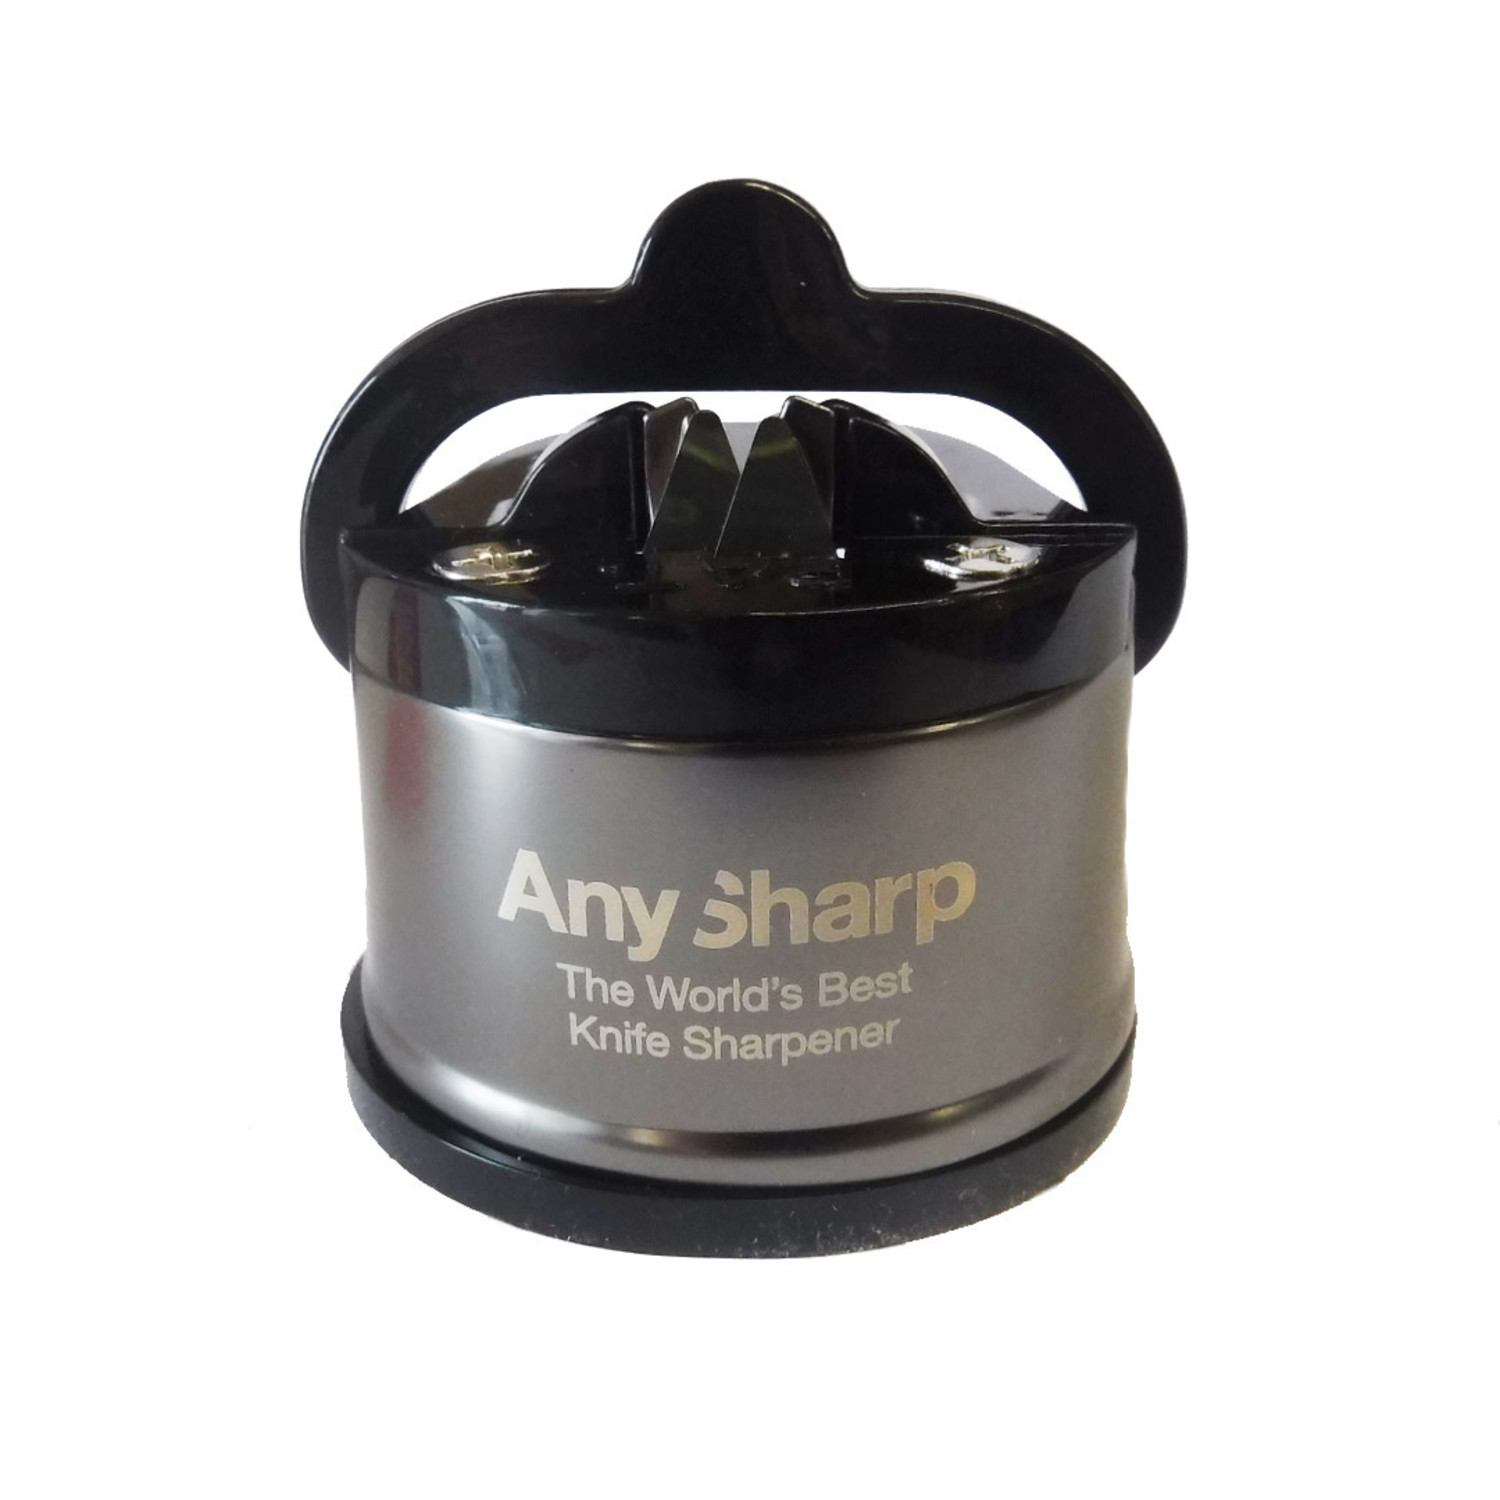 AnySharp Pro Safer Hands-Free Knife Sharpener, Brushed Metal